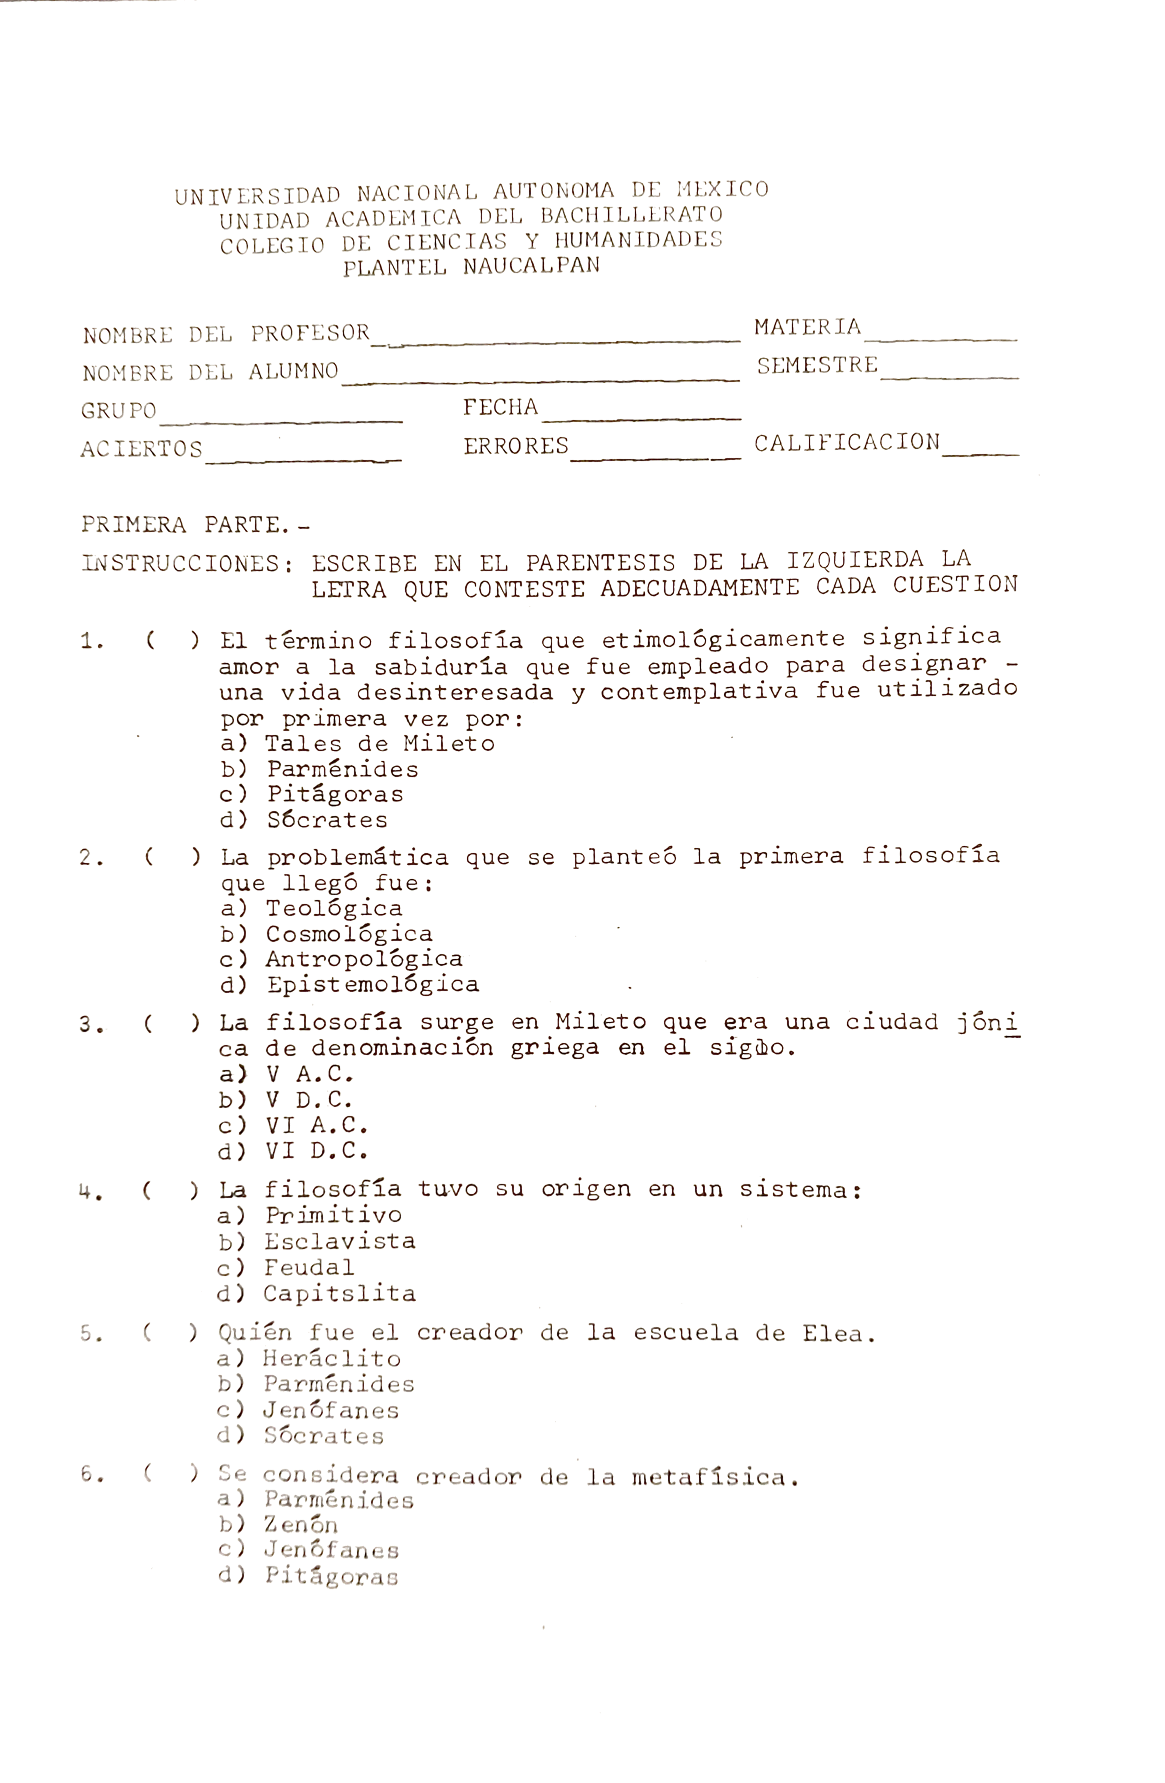 Examen de la asignatura de Filosofía, año 1985.